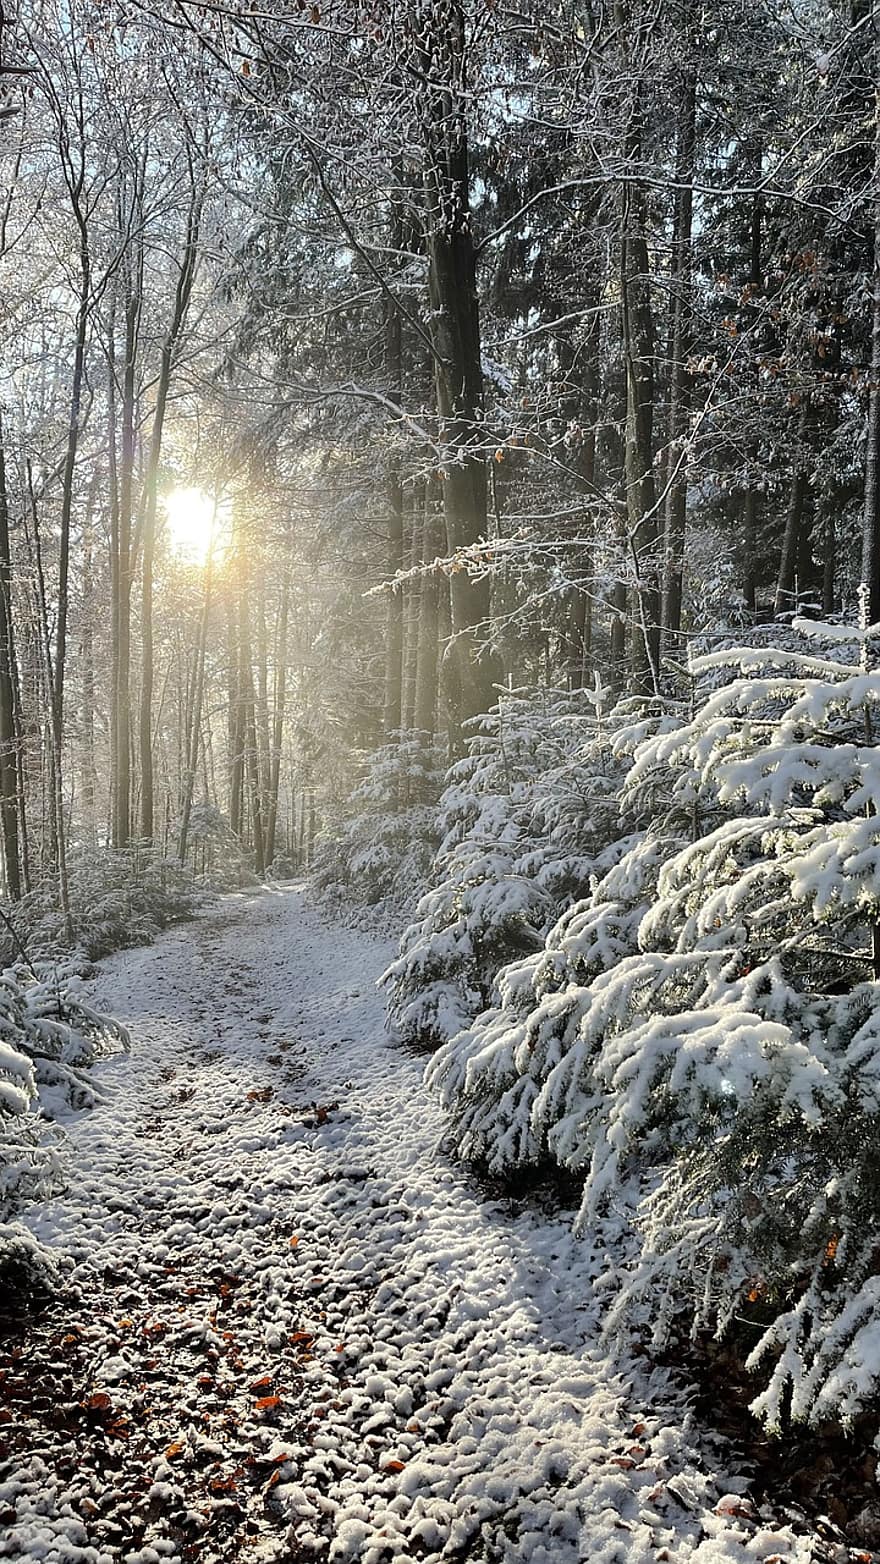 erdő, természet, pálya, téli, hó, fa, évszak, tájkép, fagy, jég, gyalogút